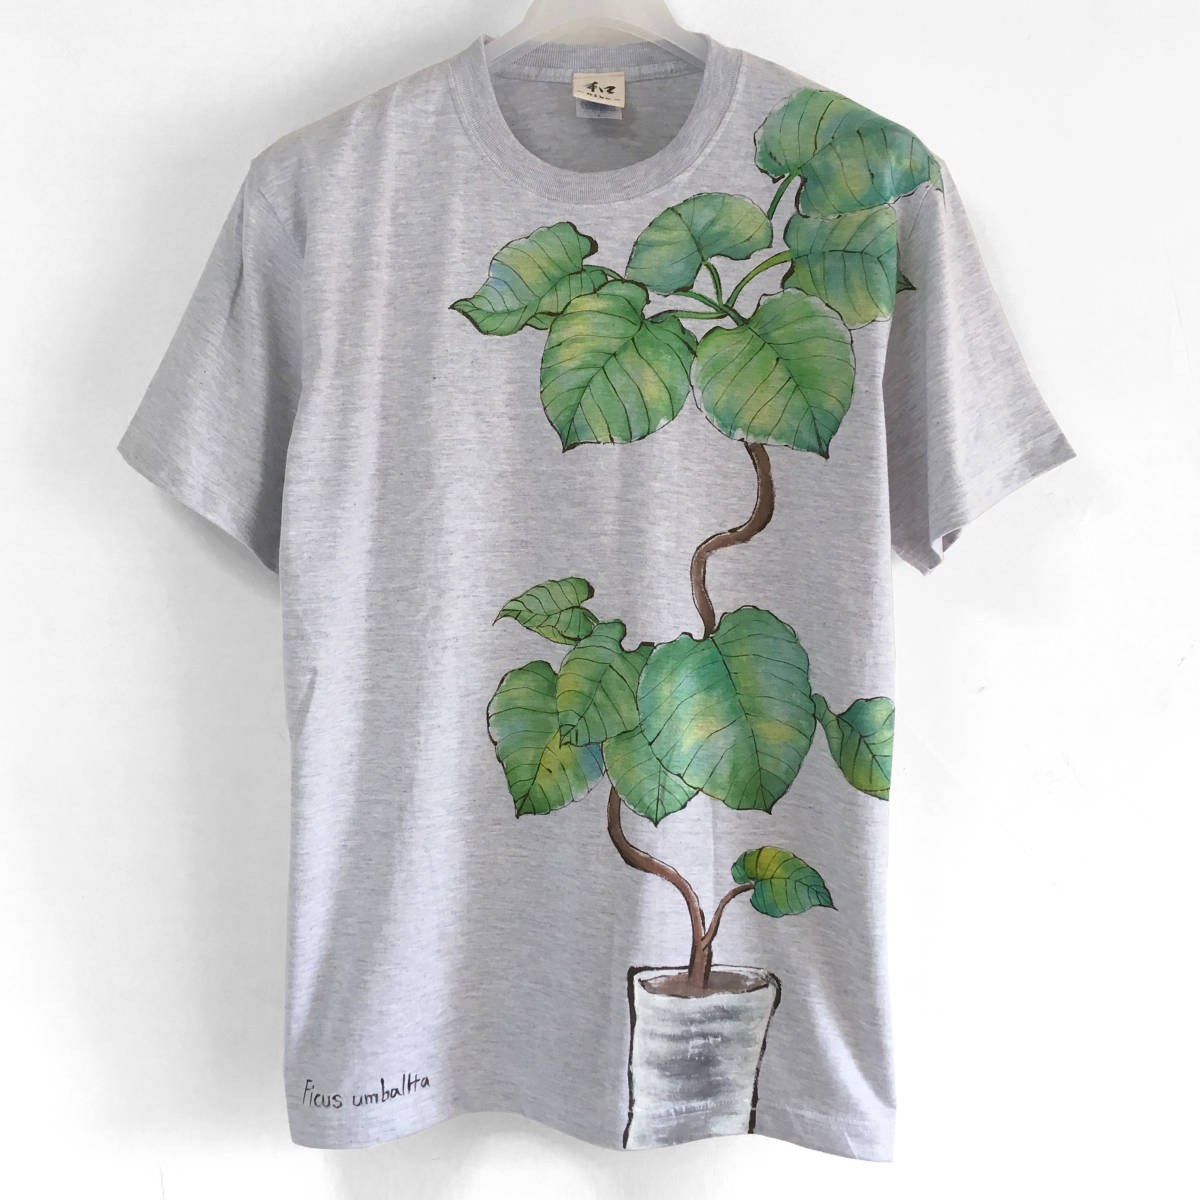 Мужская футболка размера L. Комнатное растение Фикус зонтичный с узором Футболка с рисунком ботанического рисунка День отца Растительное искусство Ручная работа, Размер L, круглая шея, узорчатый